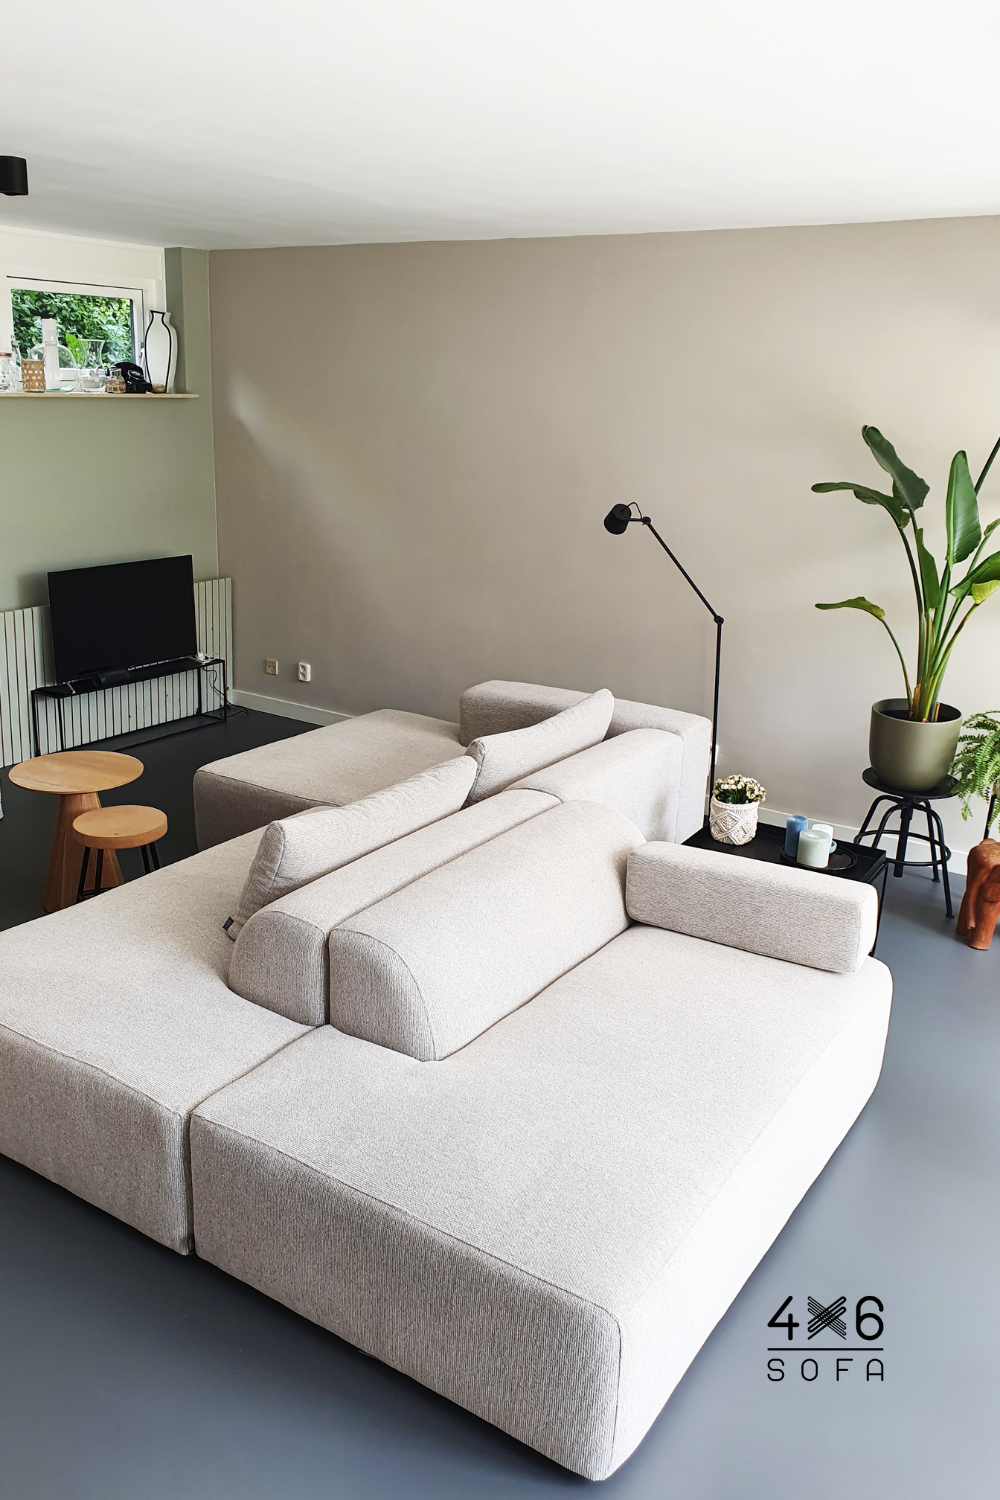 Feature of corner sofas